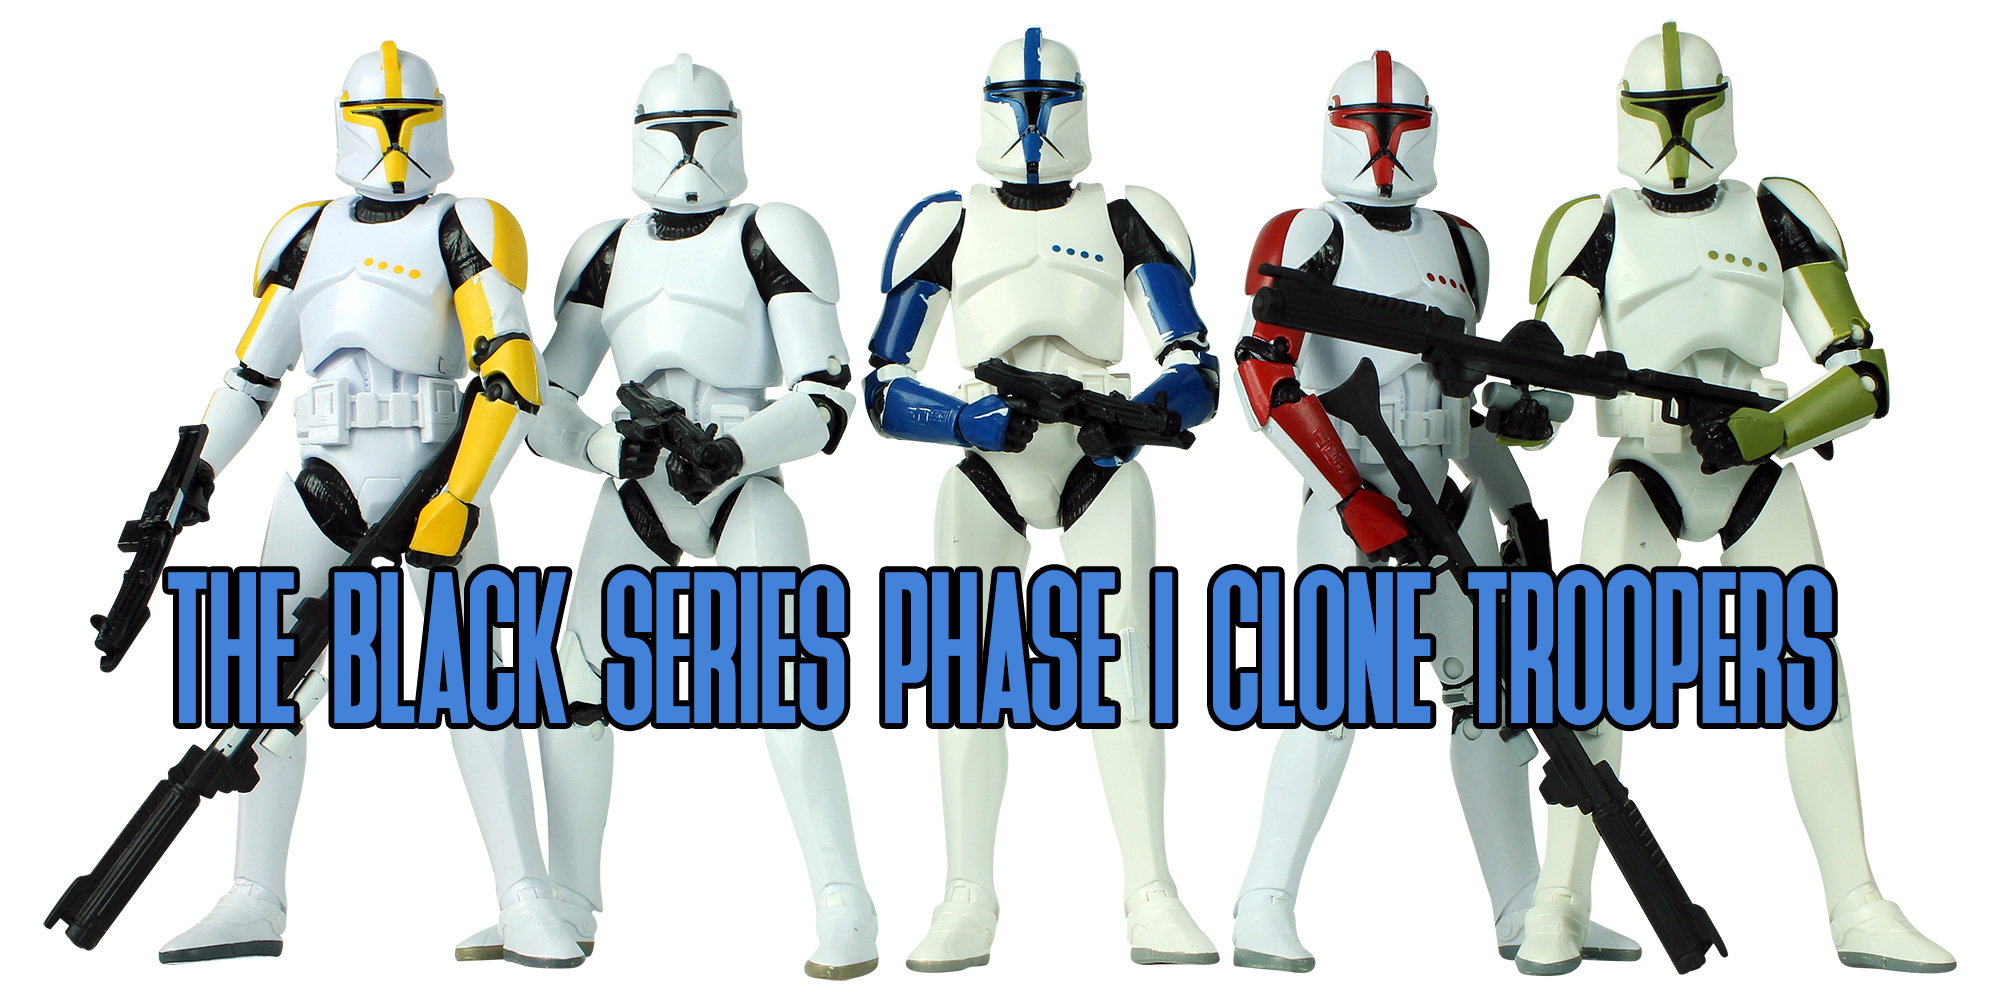 Black Series Clone Troopers